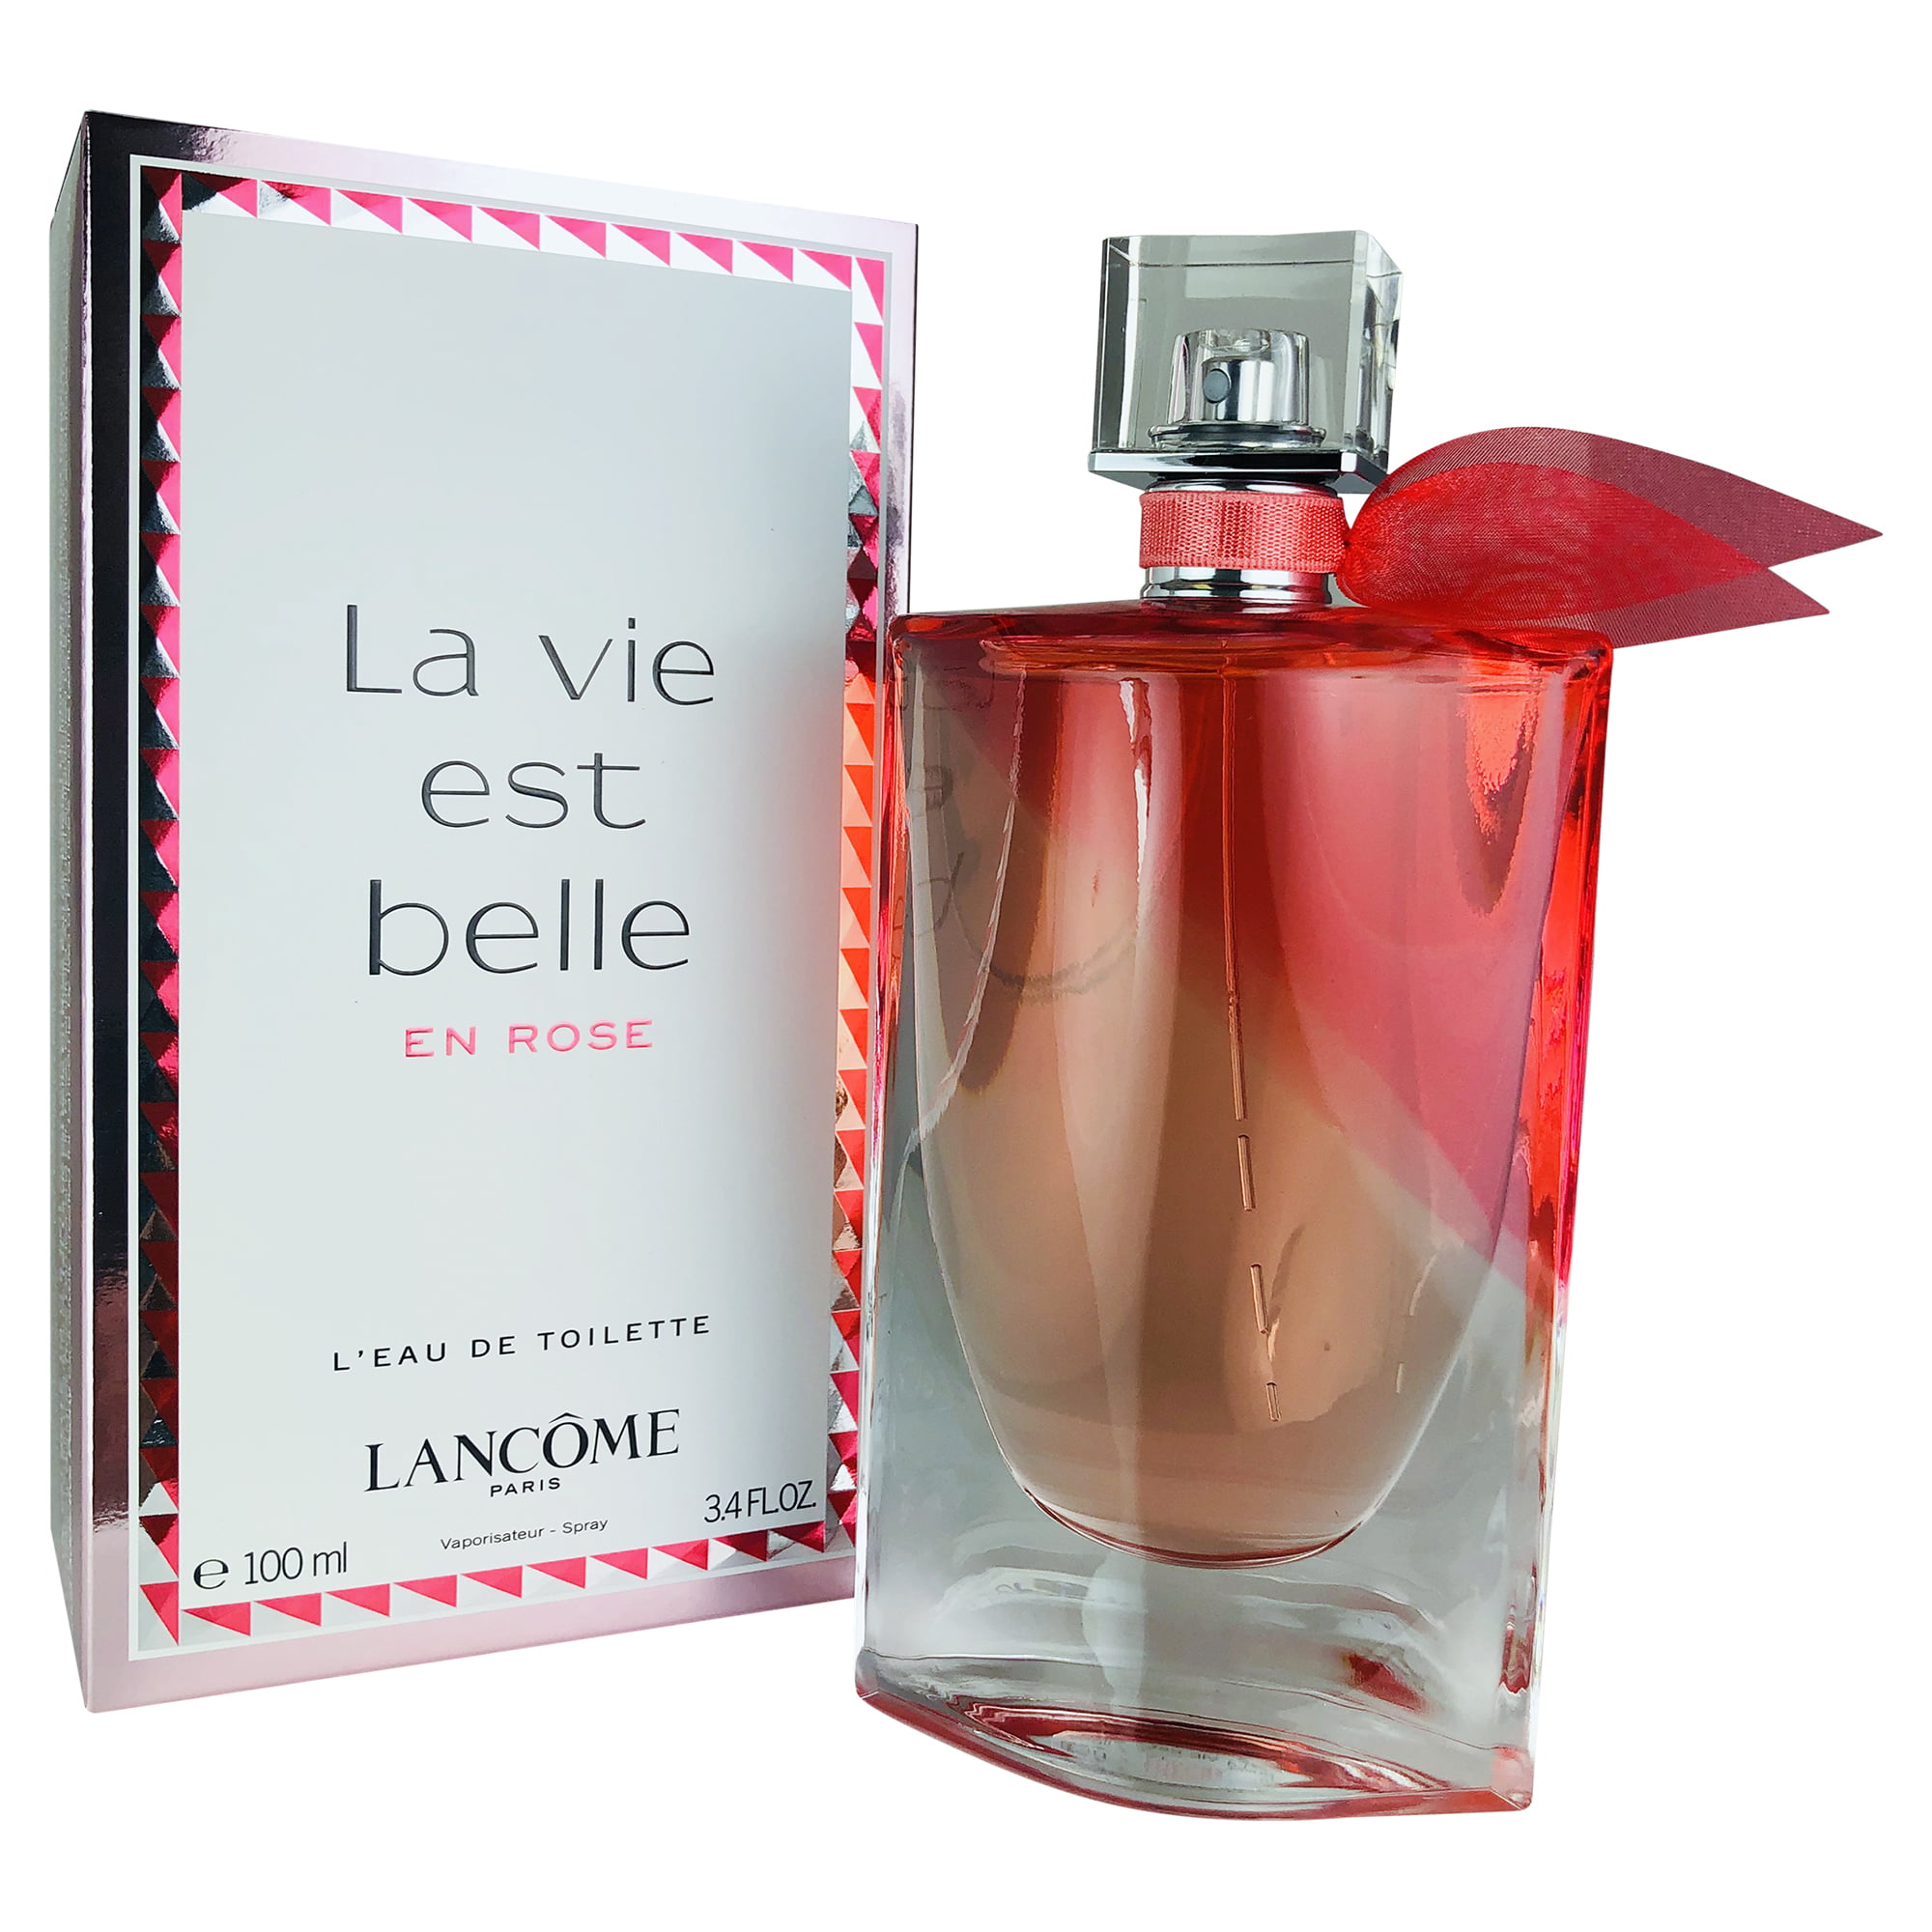 maniac pijpleiding Brutaal Lancome La Vie est Belle en Rose Eau de Toilette, Perfume for Women, 3.4 Oz  - Walmart.com